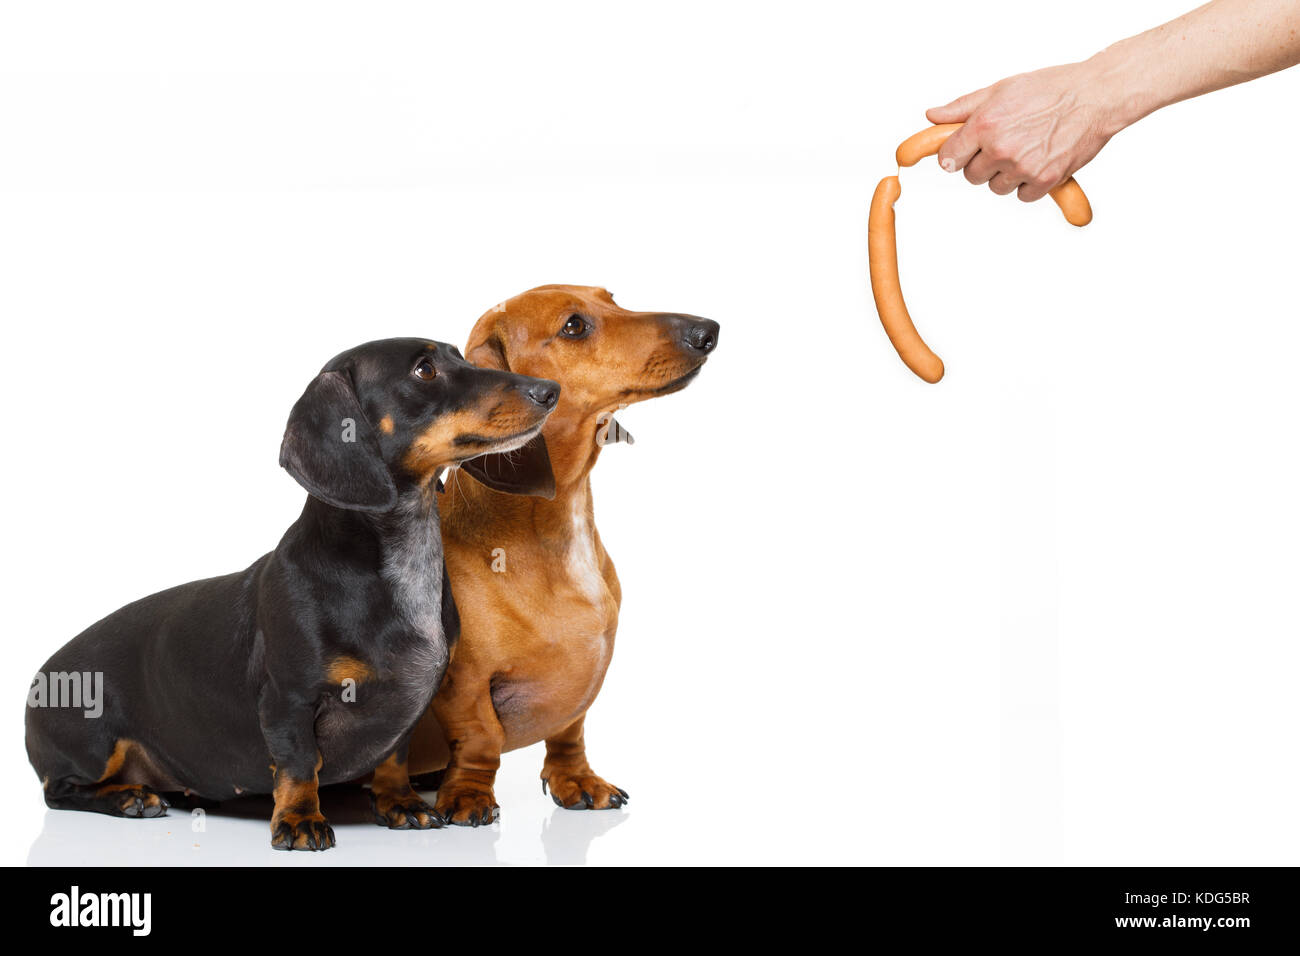 Hungrig paar Dackel wurst Hunde, für die eine Festlichkeit Wiener durch seinen Inhaber, auf weißem Hintergrund, für eine Mahlzeit oder Essen Stockfoto